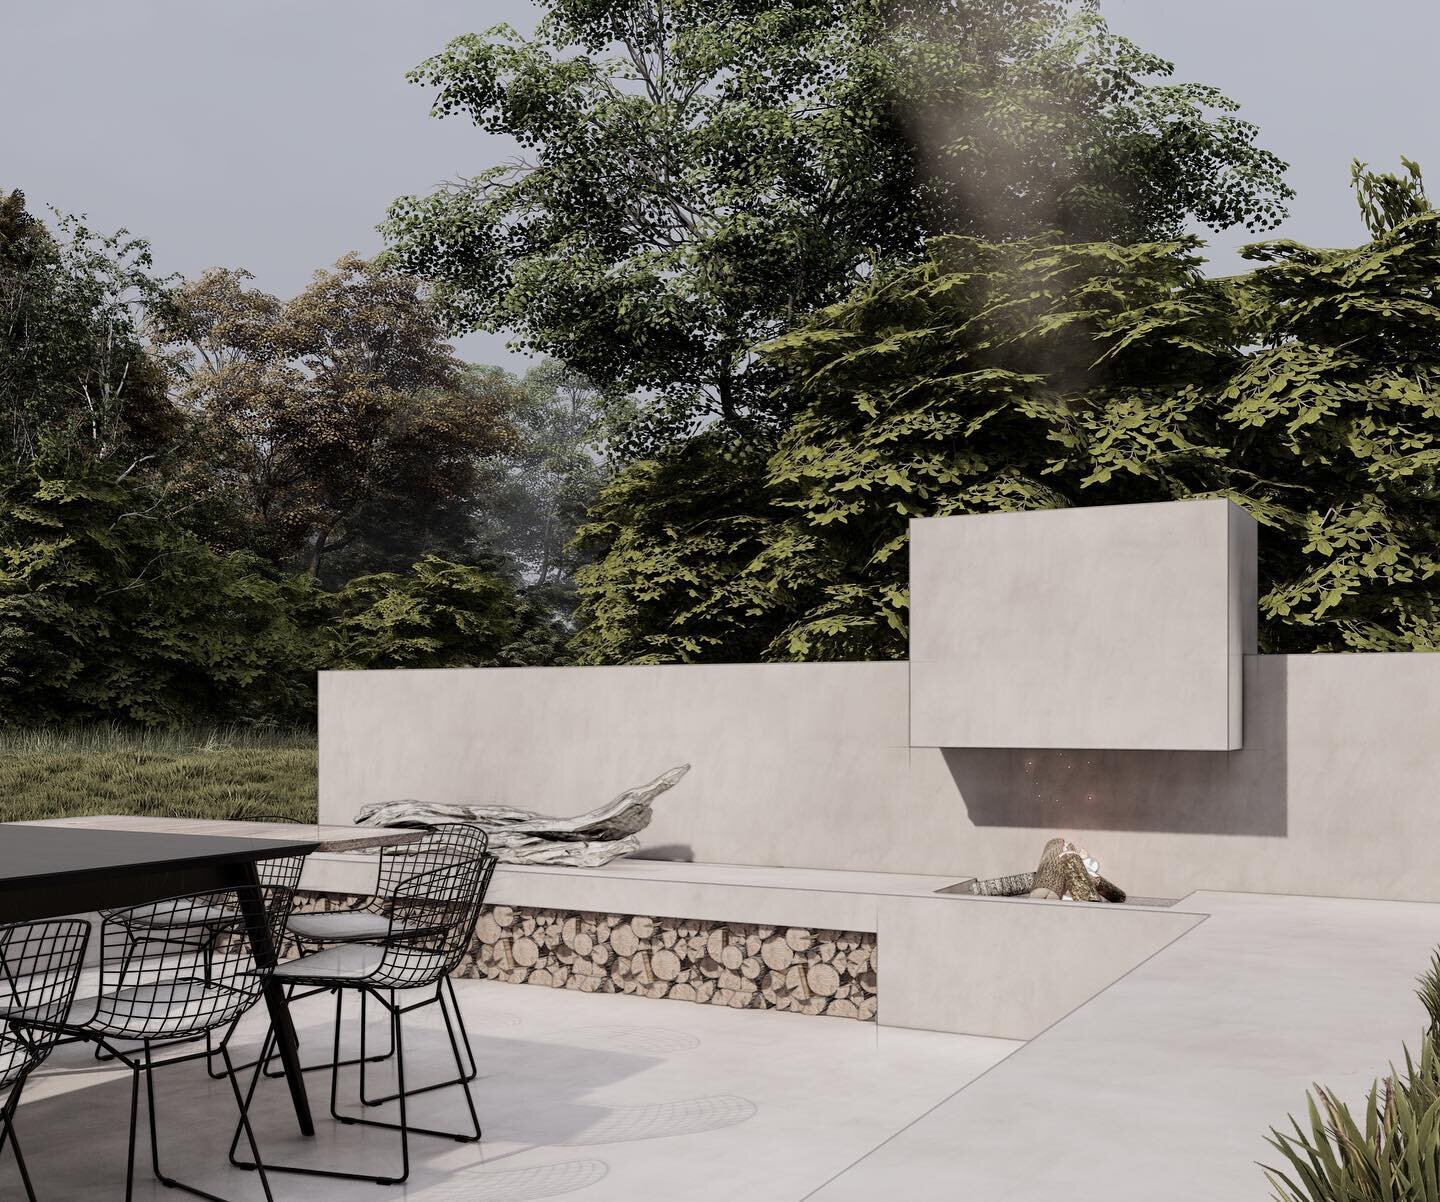 Future farmhouse garden 🌿
-
-
-
Sunken lounge and garden space designed by @conceptgardens.eu 
-
-
-
#futuregarden #architecture #future #spaces #exteriordesign #gardendesigner